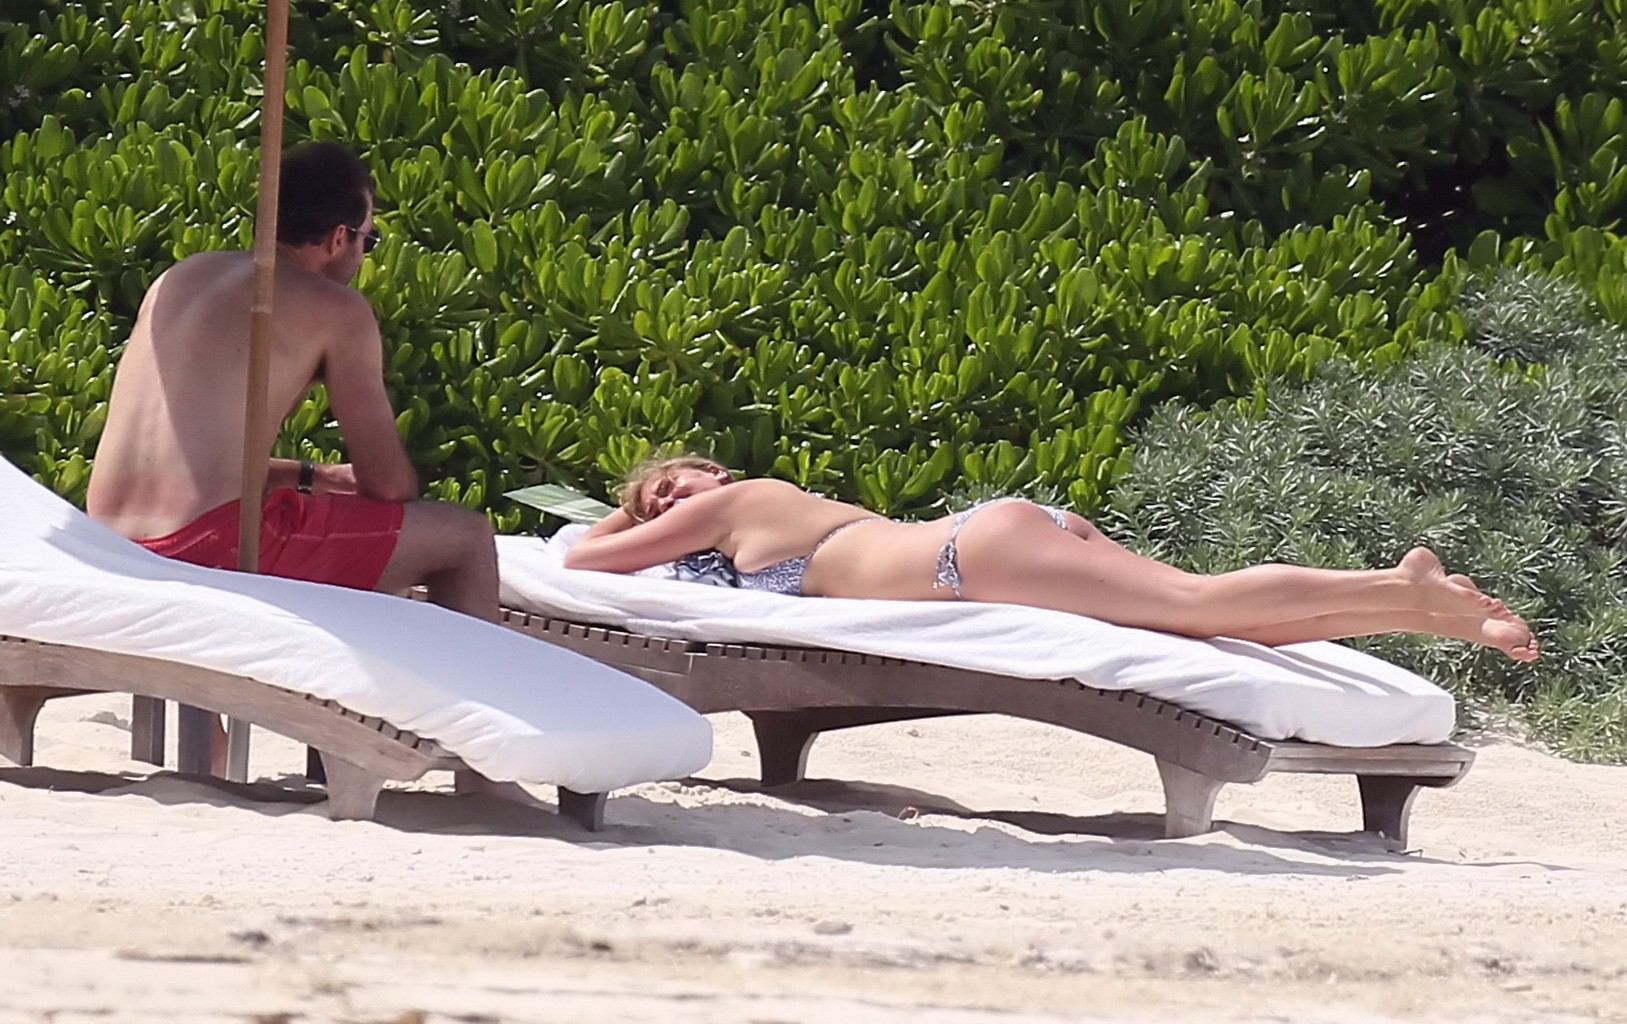 Kate upton bronceando sus melones lechosos y su culo en bikini plateado en la playa en mex
 #75190930